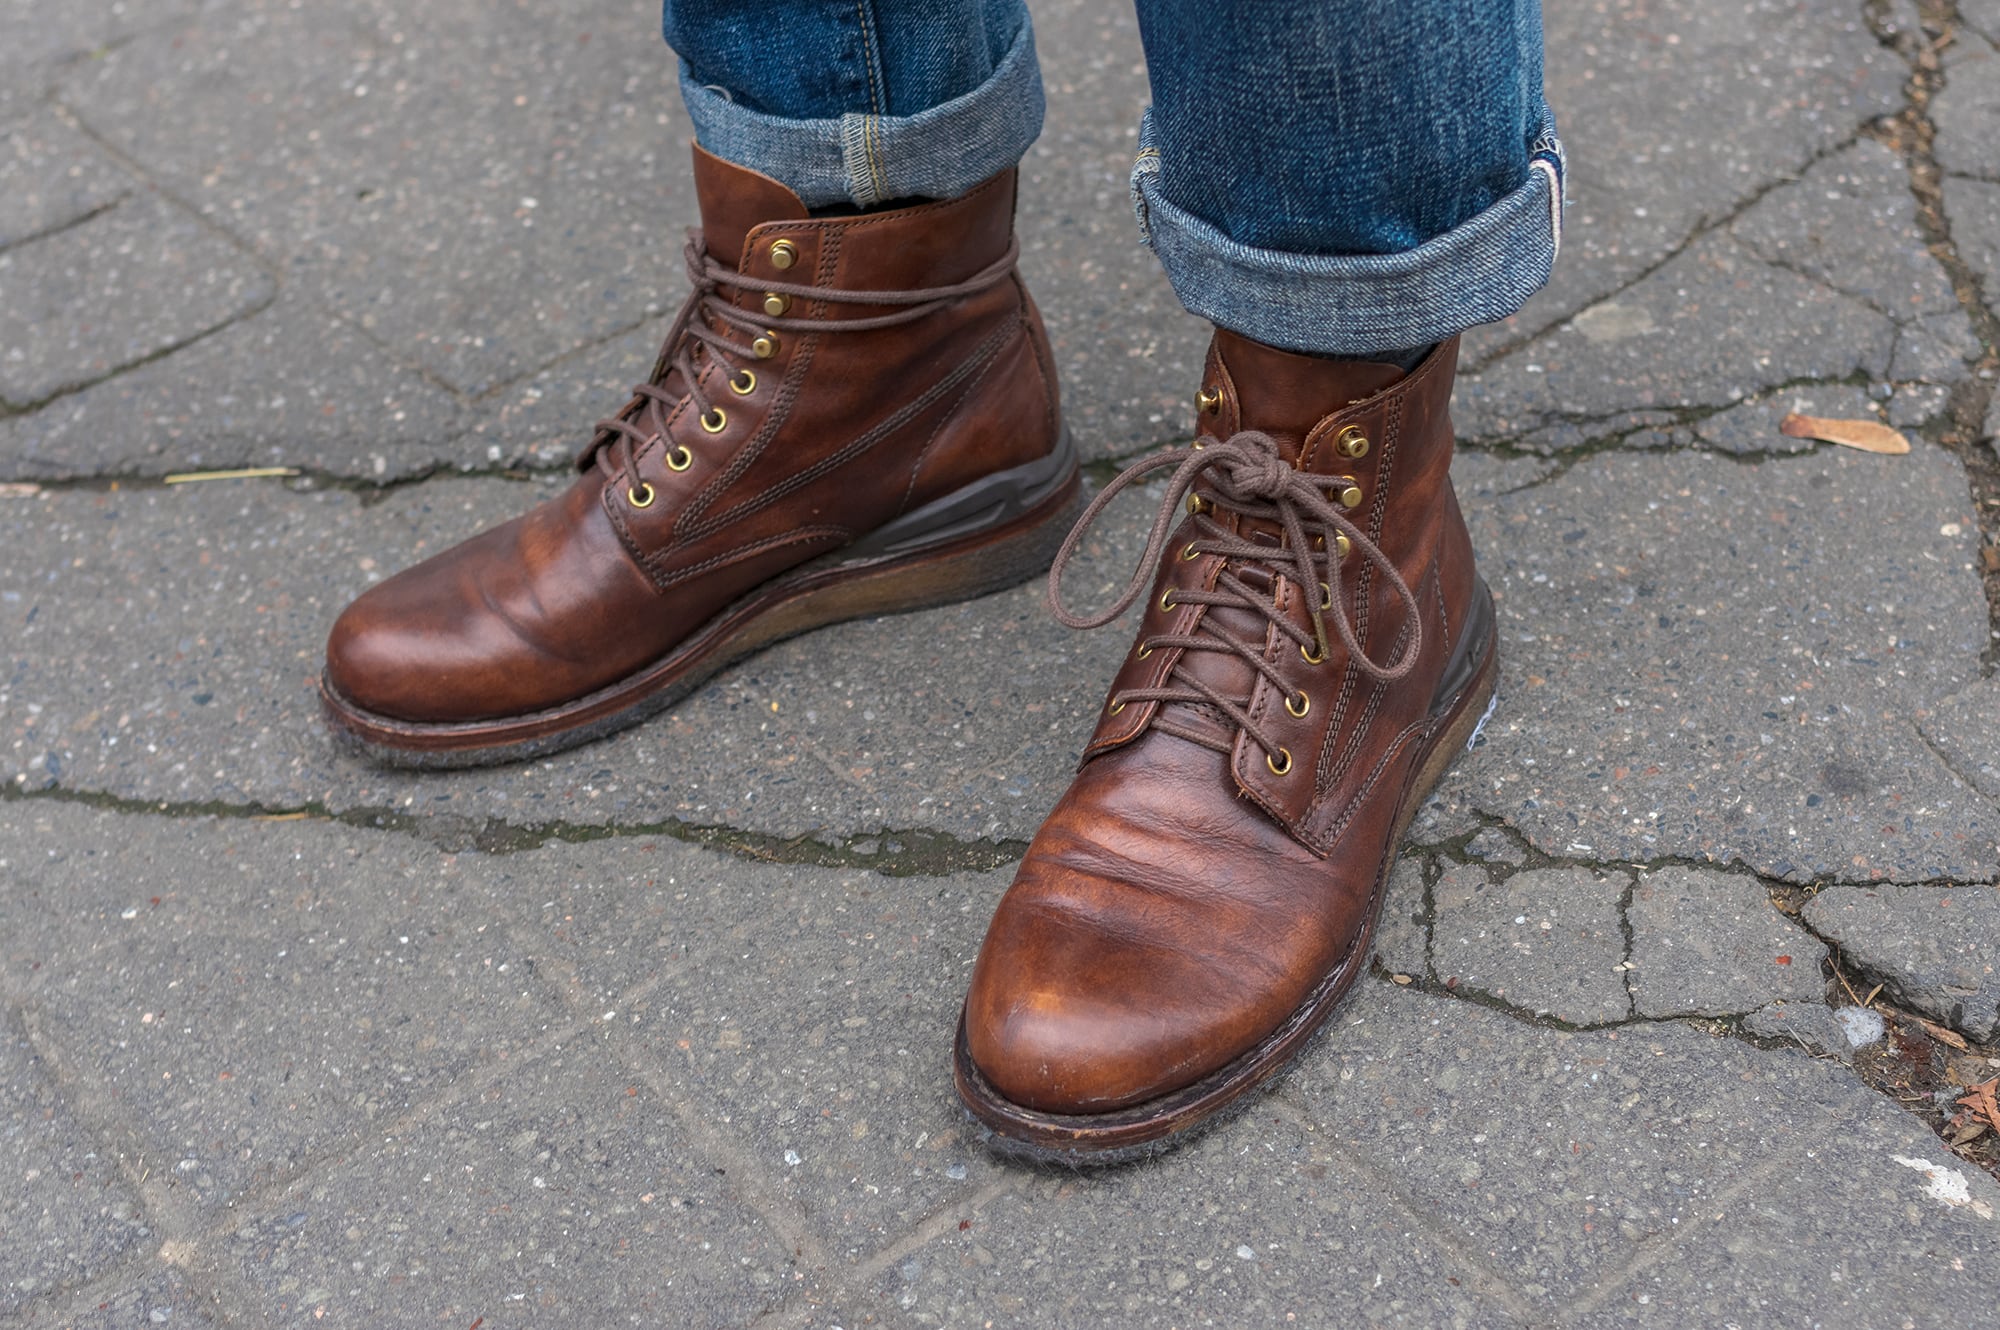 exemple de work boots revisitées par la marque japonaise Visvim et son modèle virgil boots crepe soles